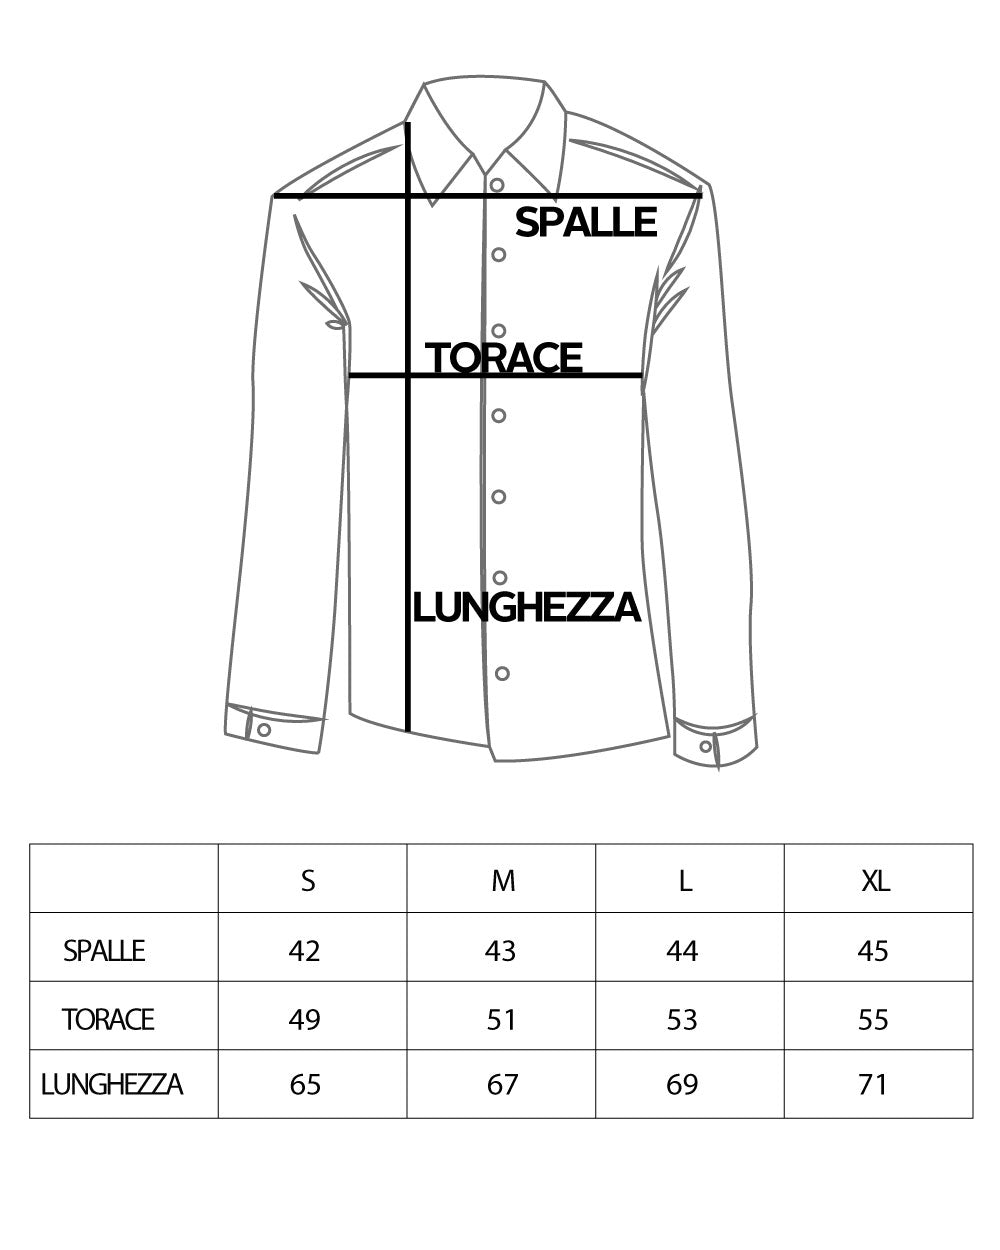 Camicia Uomo Con Colletto Manica Lunga Classica Con Taschino Basic Regular Fit Nero GIOSAL-C2051A